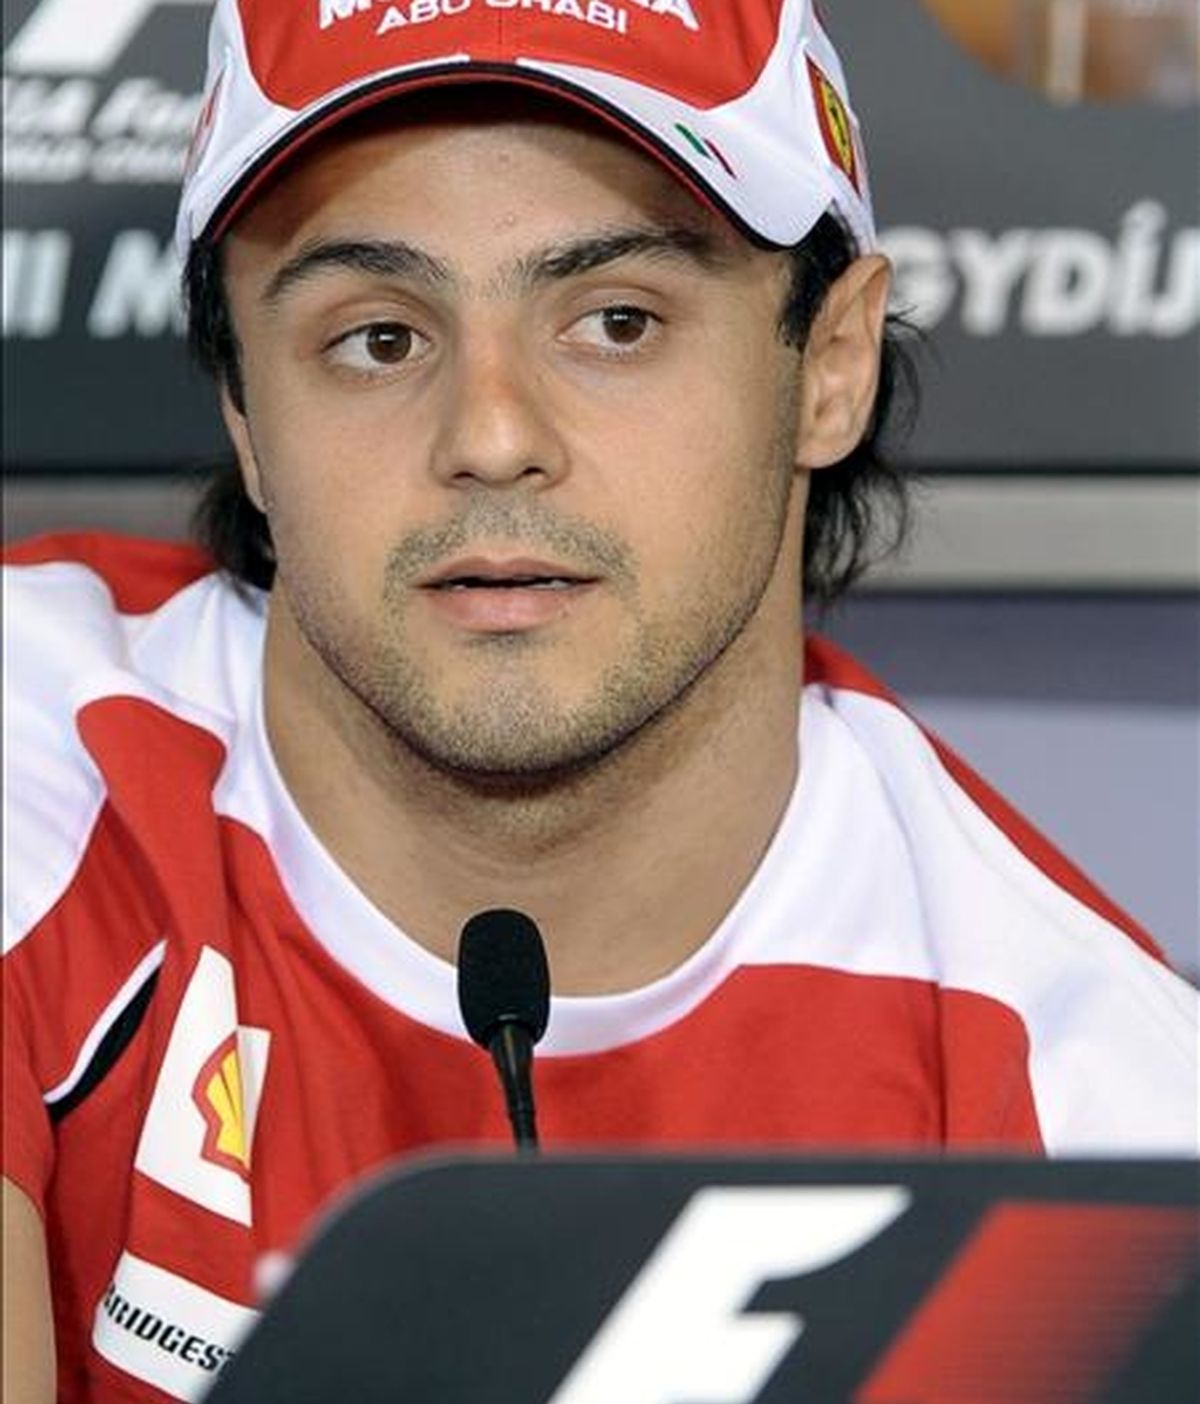 El piloto brasileño Felipe Massa de Ferrari comparece ante los medios durante una rueda de prensa celebrada en el circuito de Mogyorod, cerca de Budapest, (Hungría). EFE